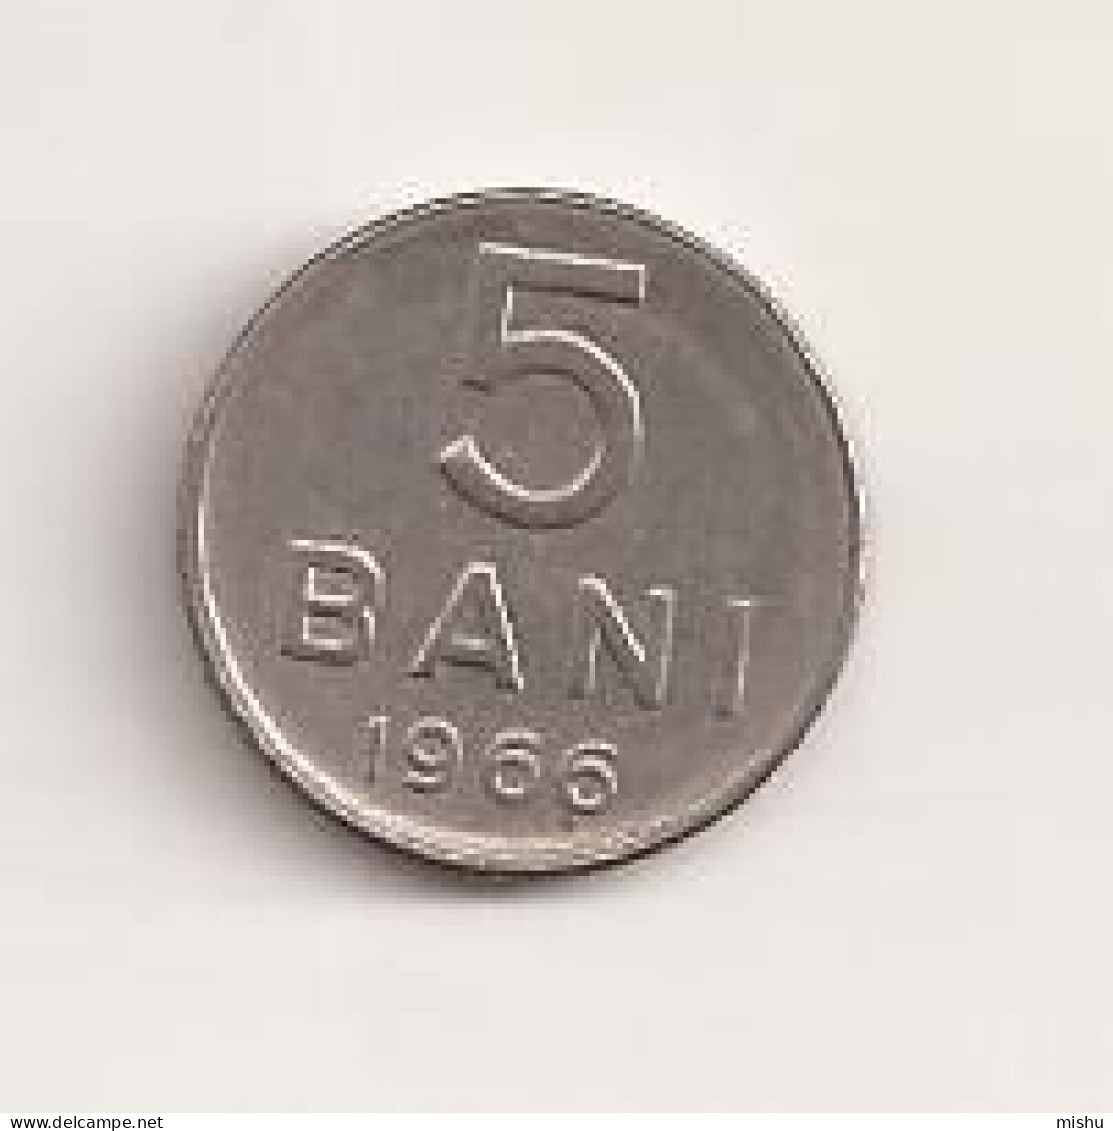 Coin - Romania - 5 Bani 1966 V7 - Roumanie